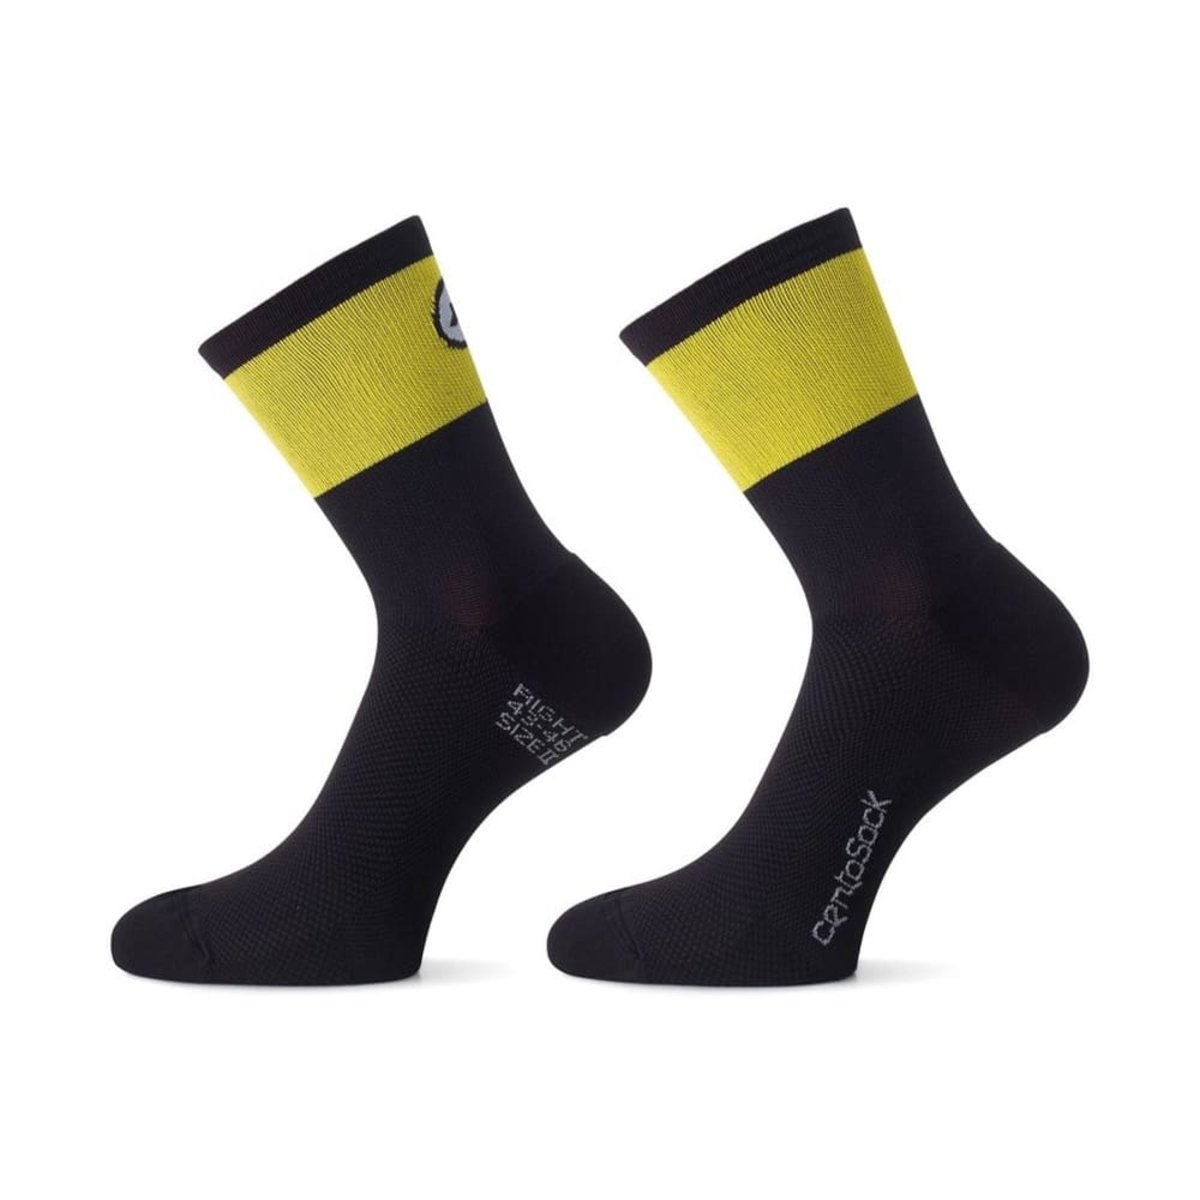 Носки ASSOS Cento Socks Evo 8 Volt Yellow, желто-черные 0/35-38 фото 